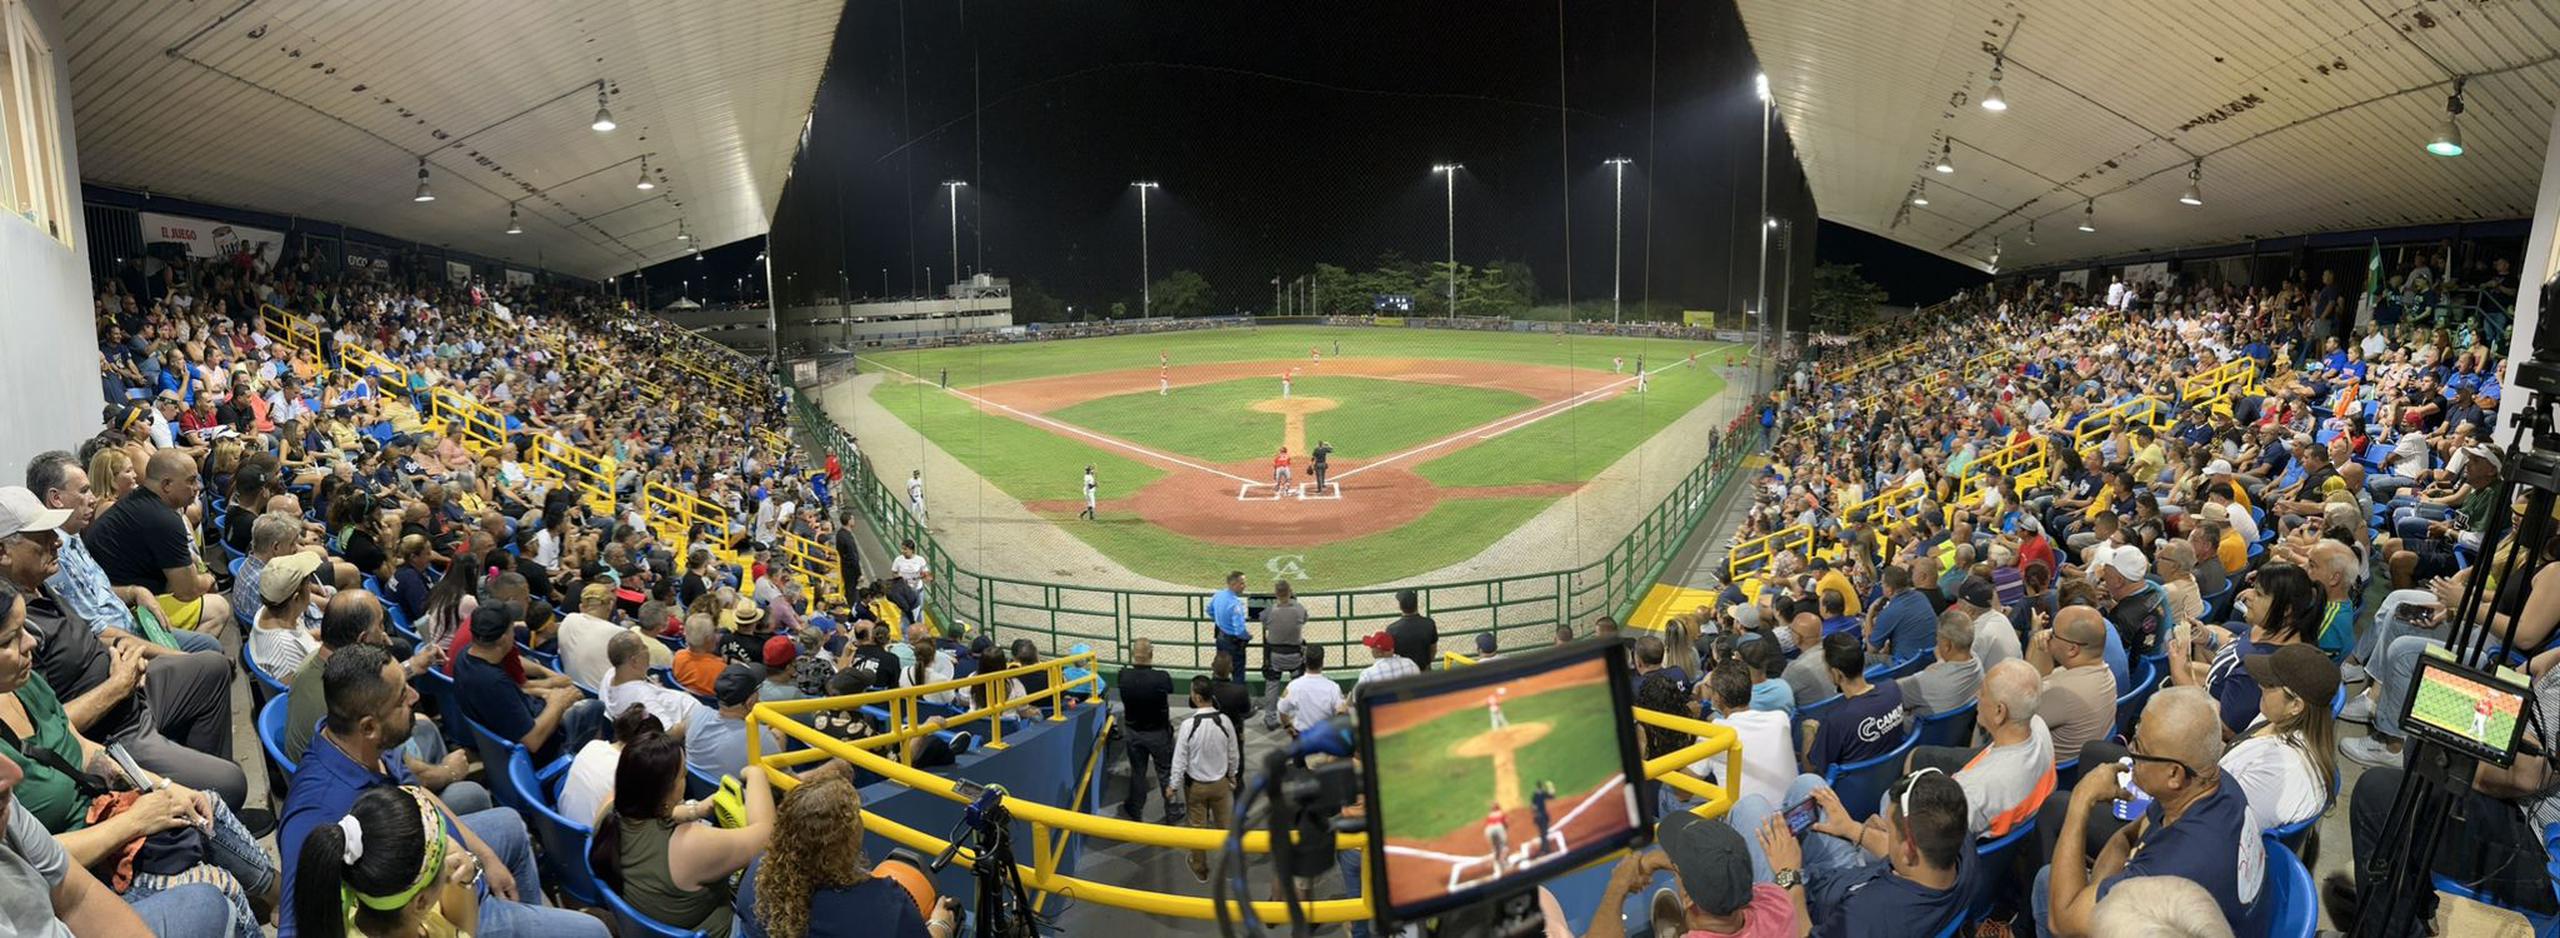 En las afueras del Estadio Juan ‘Cheo’ López de Camuy ocurrieron incidentes que la Federación de Béisbol de Puerto Rico investiga.